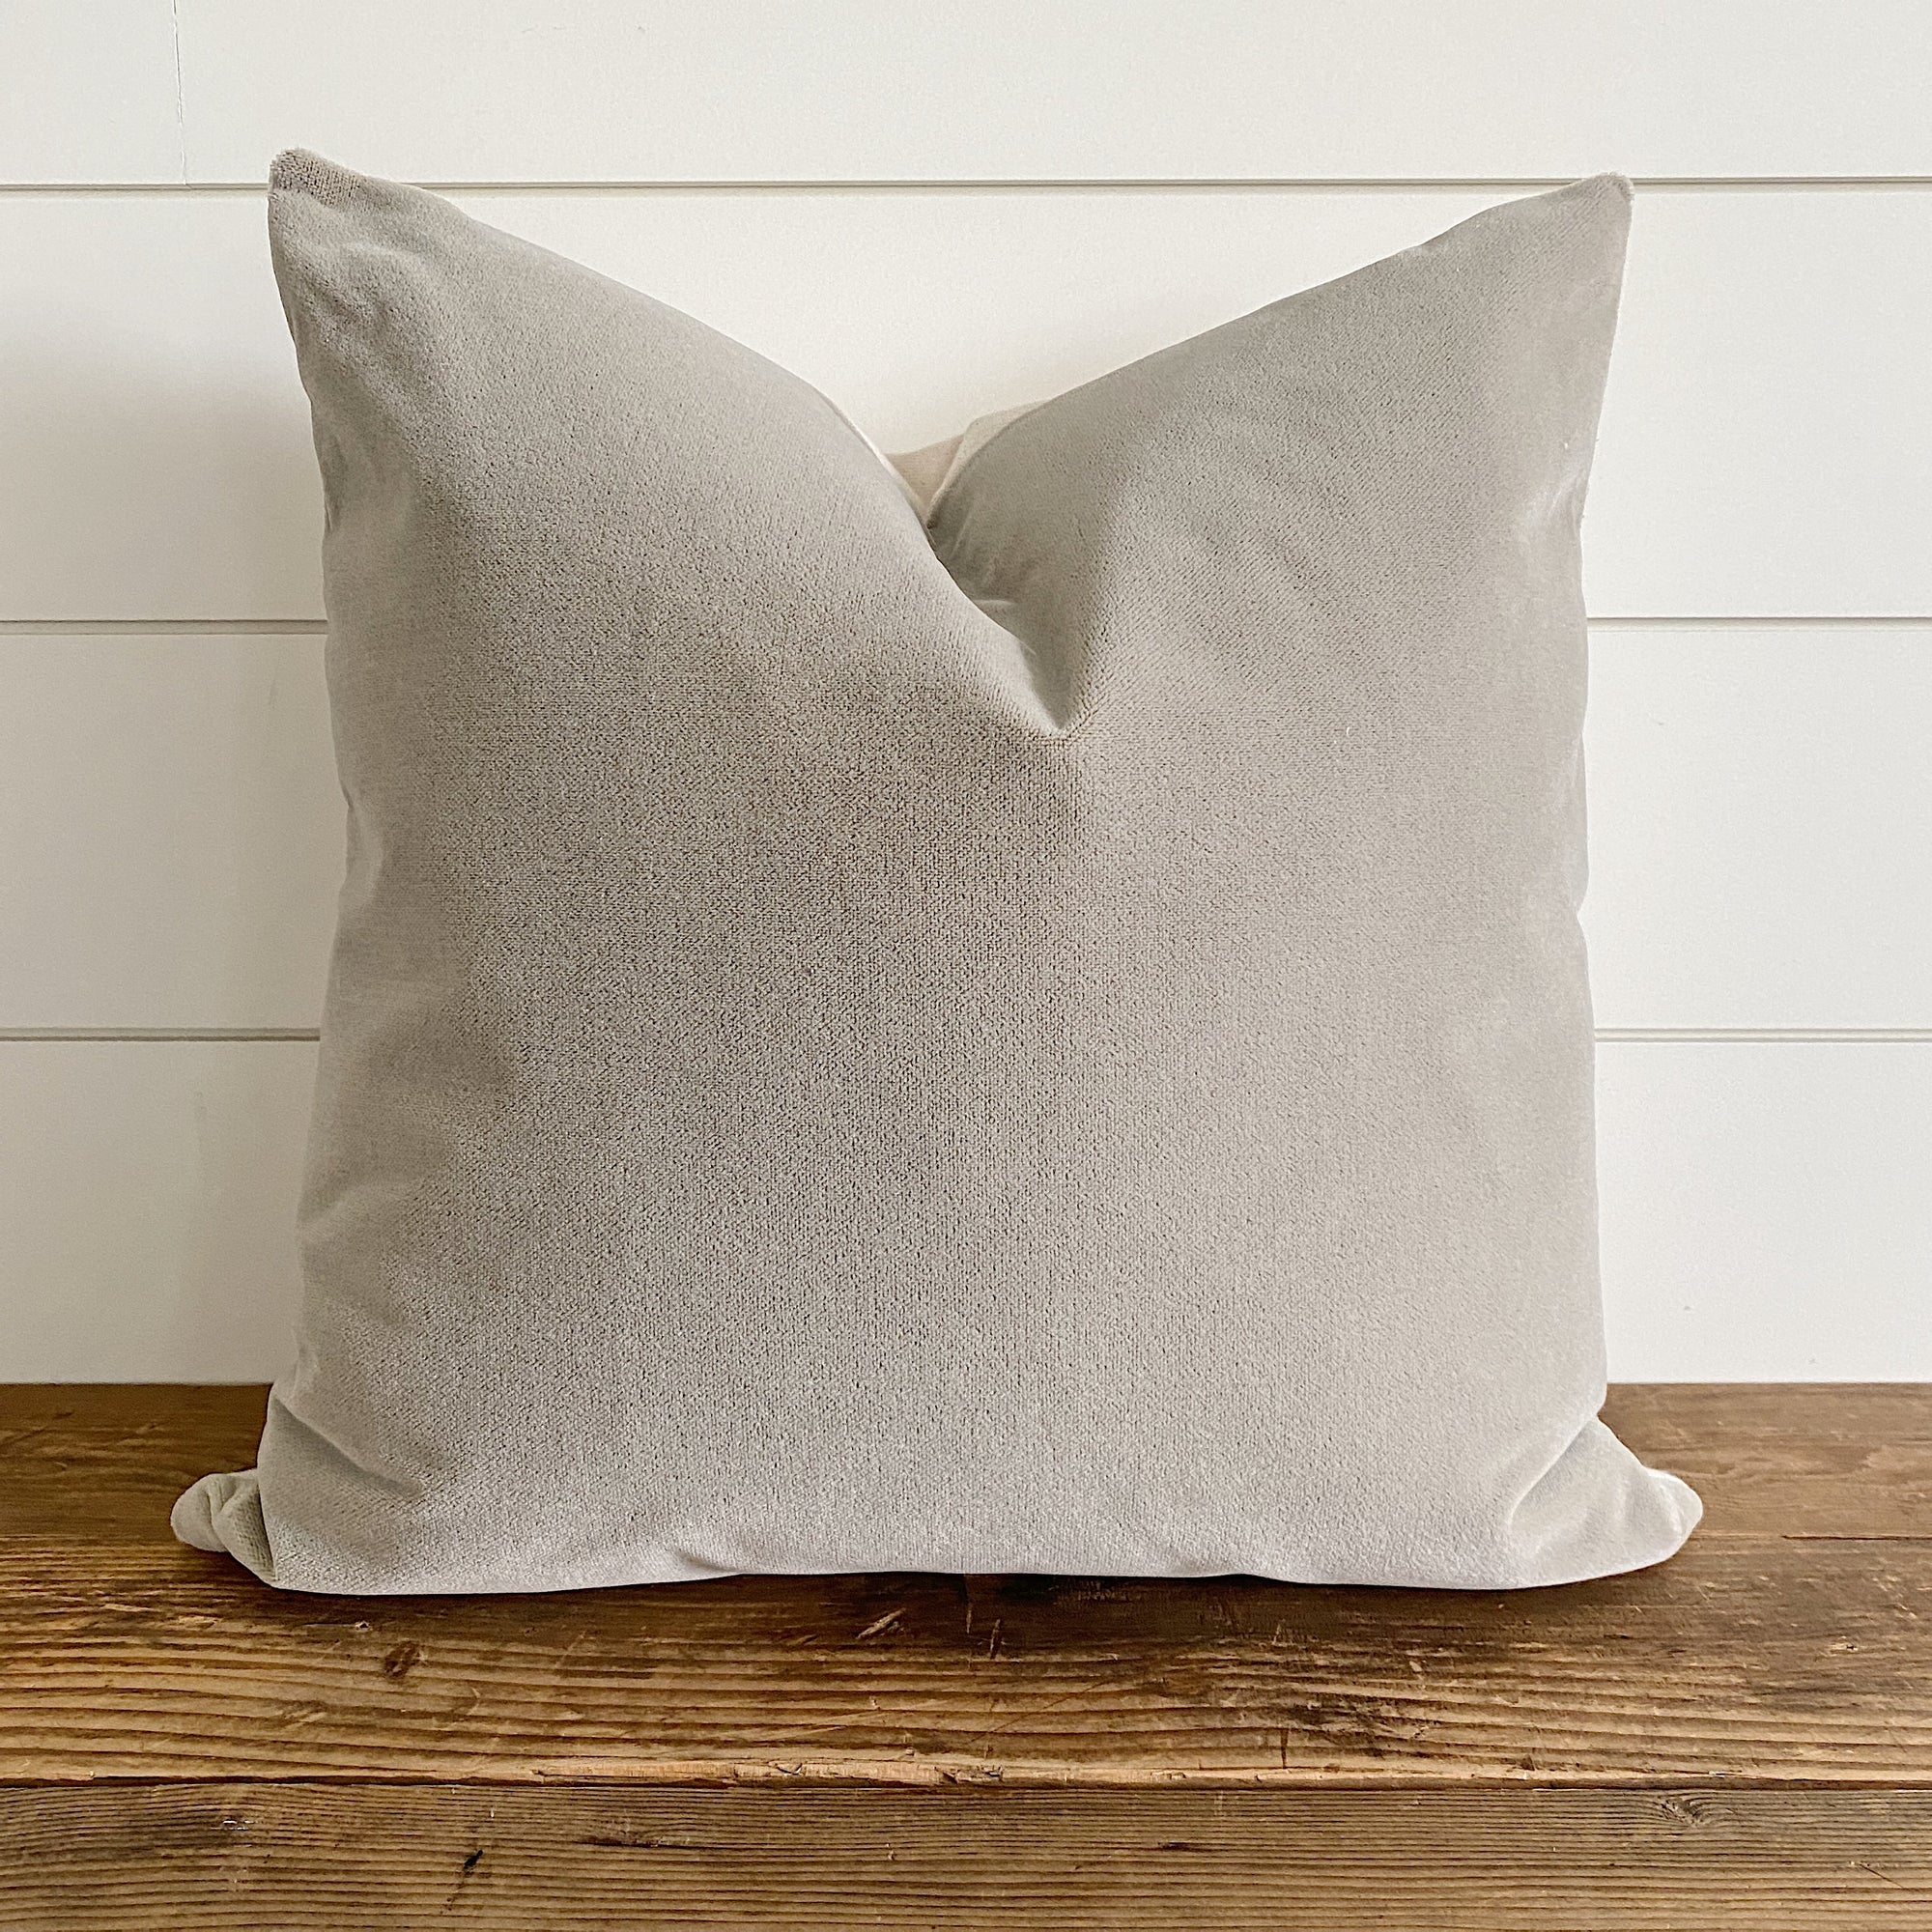 DREW || Mushroom Neutral Pillow Cover